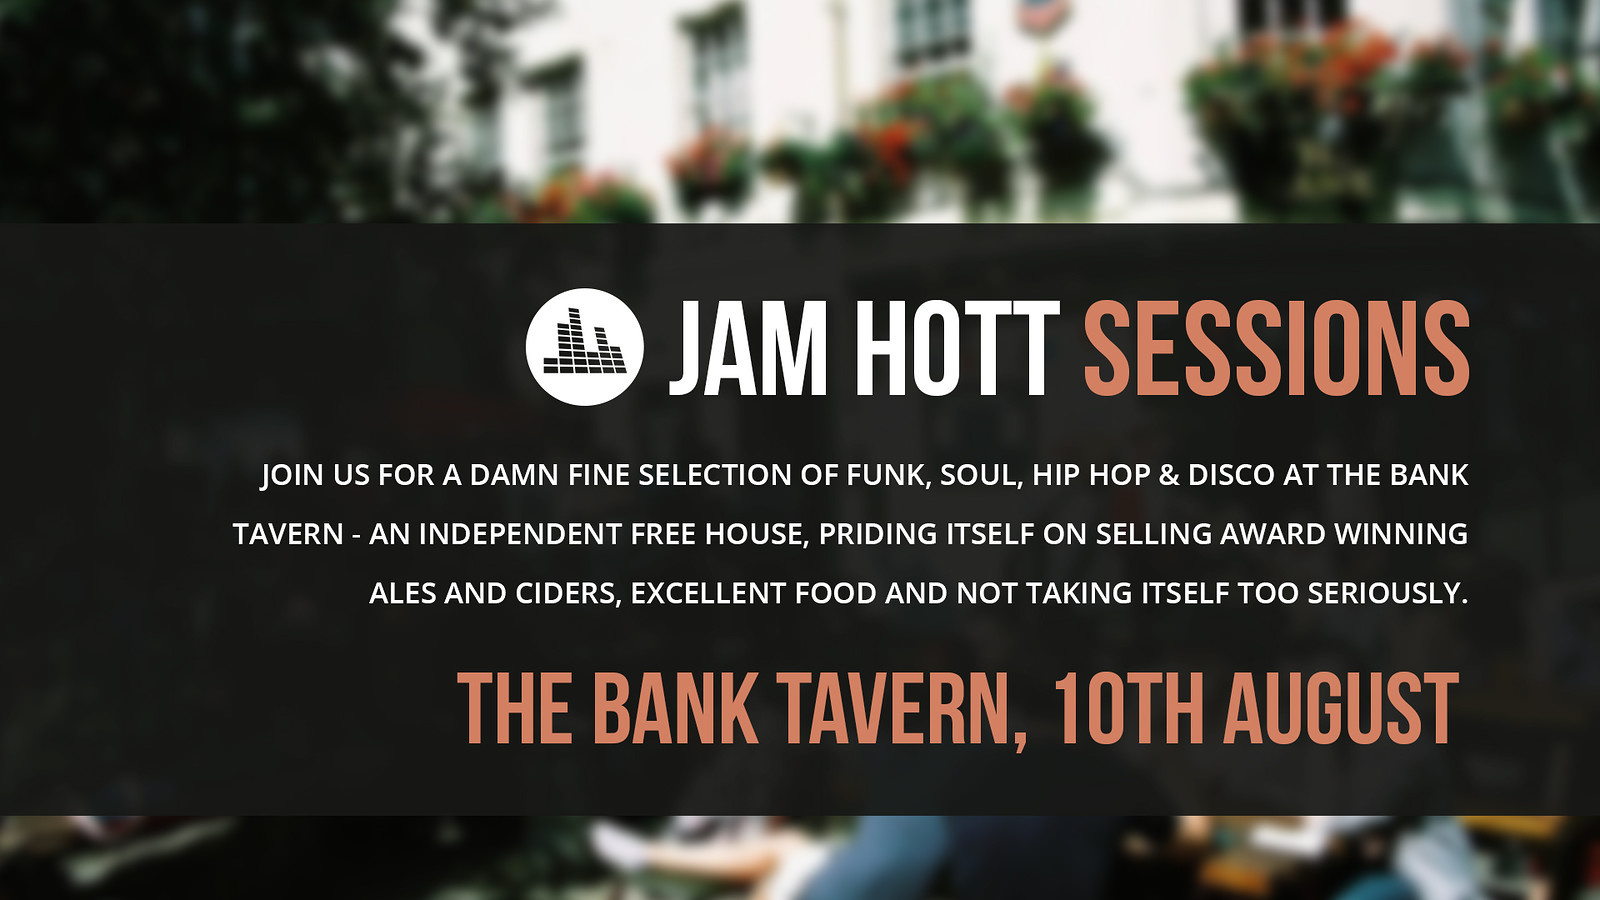 Jam Hott Sessions at The Bank Tavern at Bank Tavern